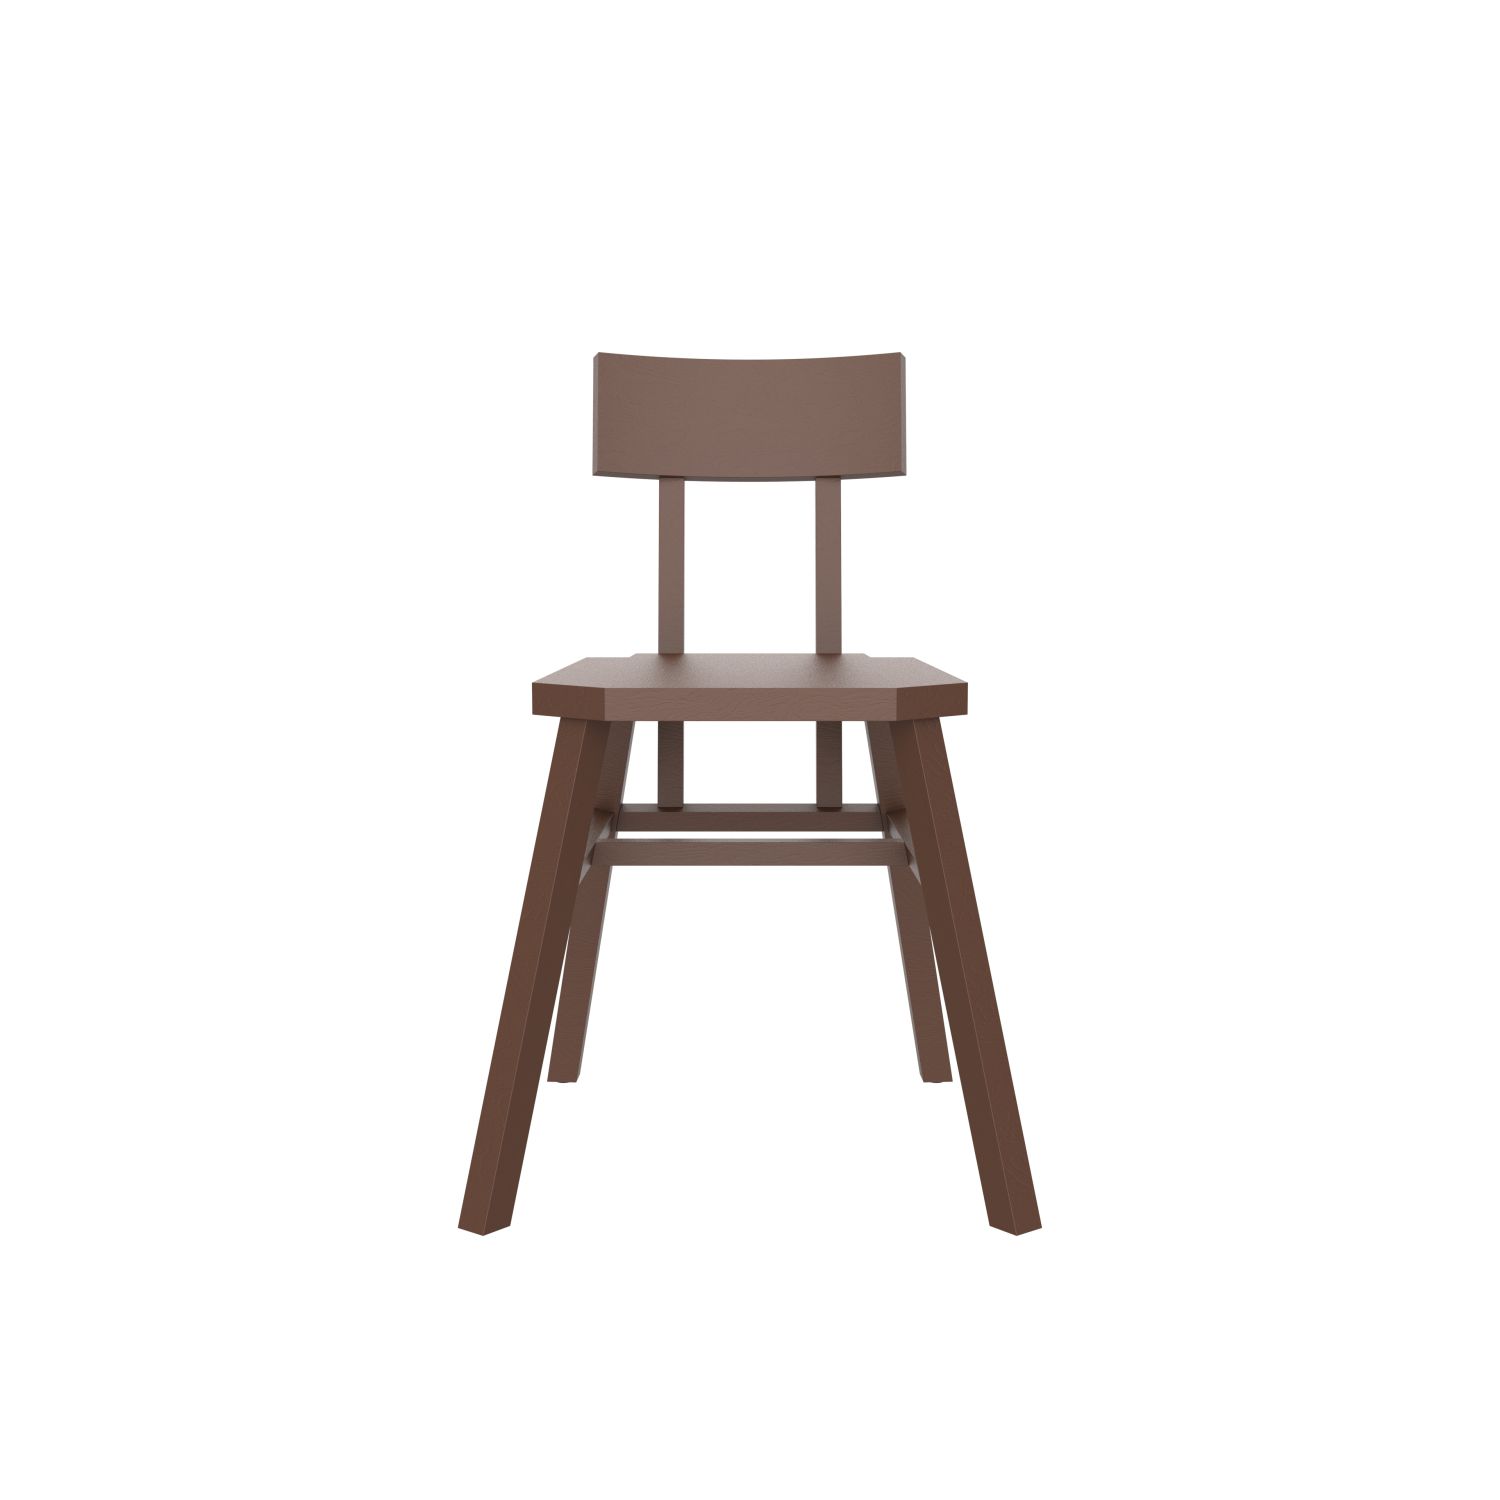 avl spider chair nut brown